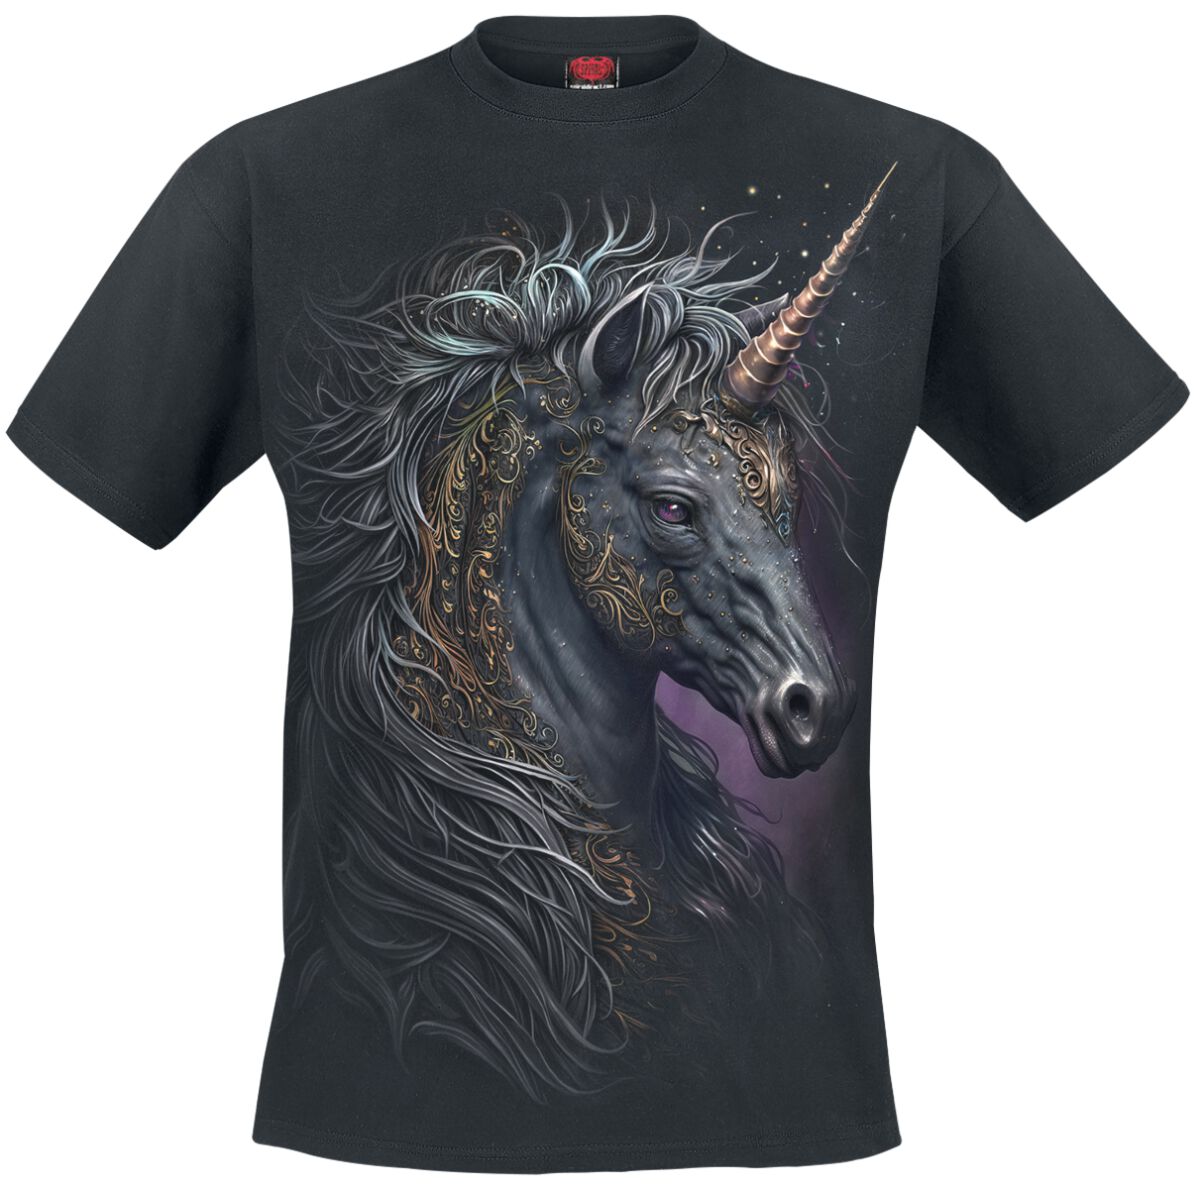 Spiral - Einhorn T-Shirt - Celtic Unicorn - S bis 3XL - für Männer - Größe XXL - schwarz